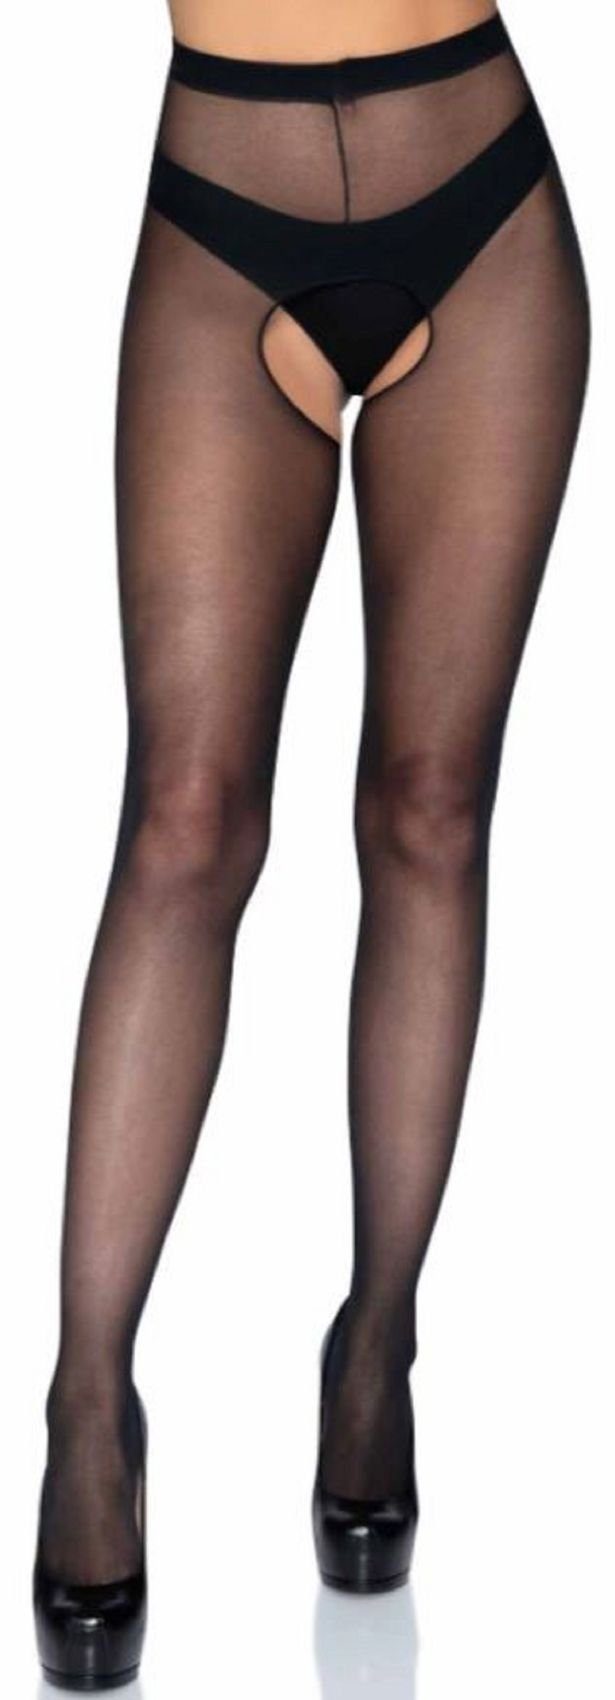 Leg Avenue Ouvert Strumpfhose »Damen Strumpfhose mit offenem Schritt ouvert  in schwarz transparent Einheitsgröße ca. 36 bis 40« 15 DEN online kaufen |  OTTO